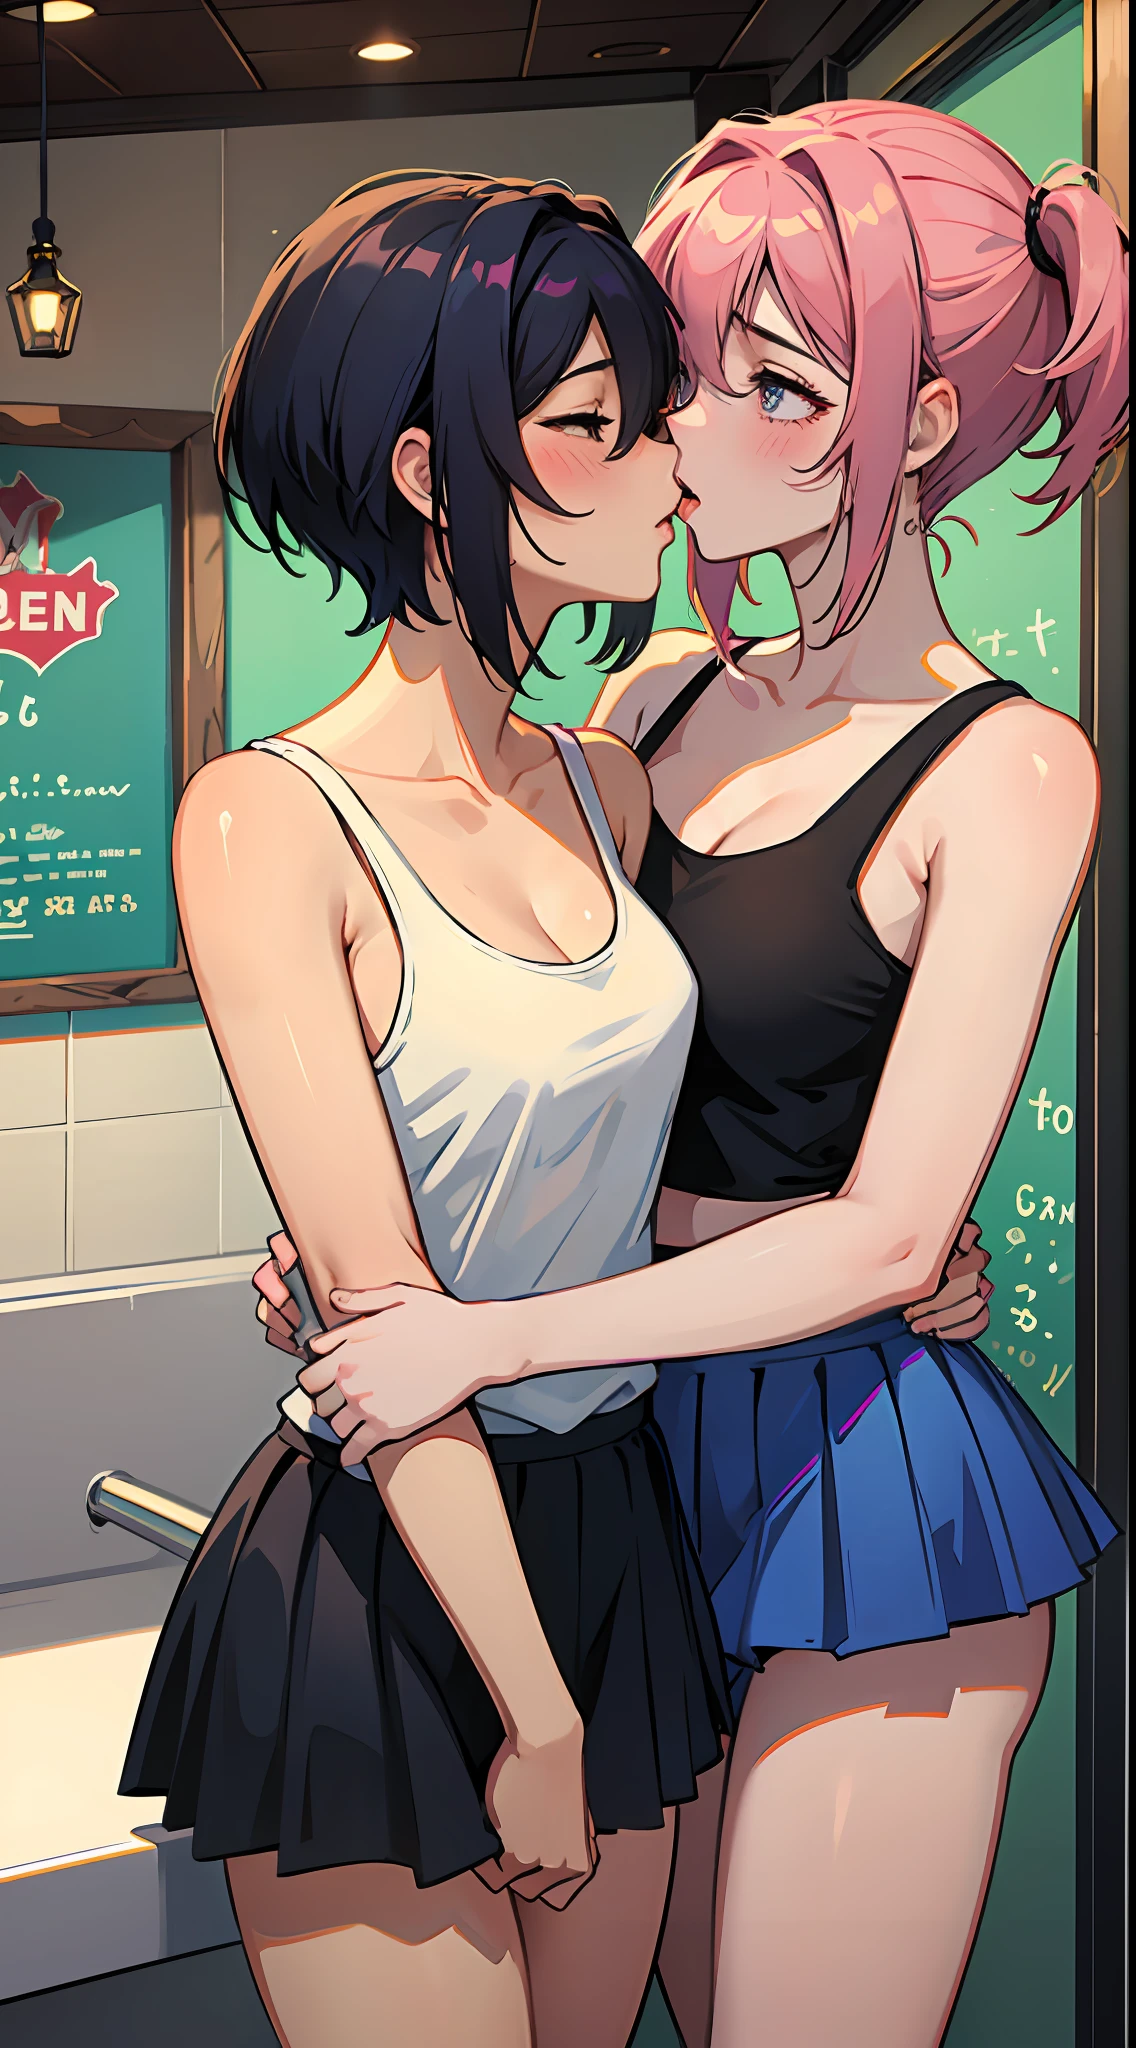 2 mulheres se divertindo na sorveteria, sensual:1,2, hentai:1,2, nsfw:1,2, Lésbica Yuri:1,2, Se beijando, rubor, vestindo tops e saias